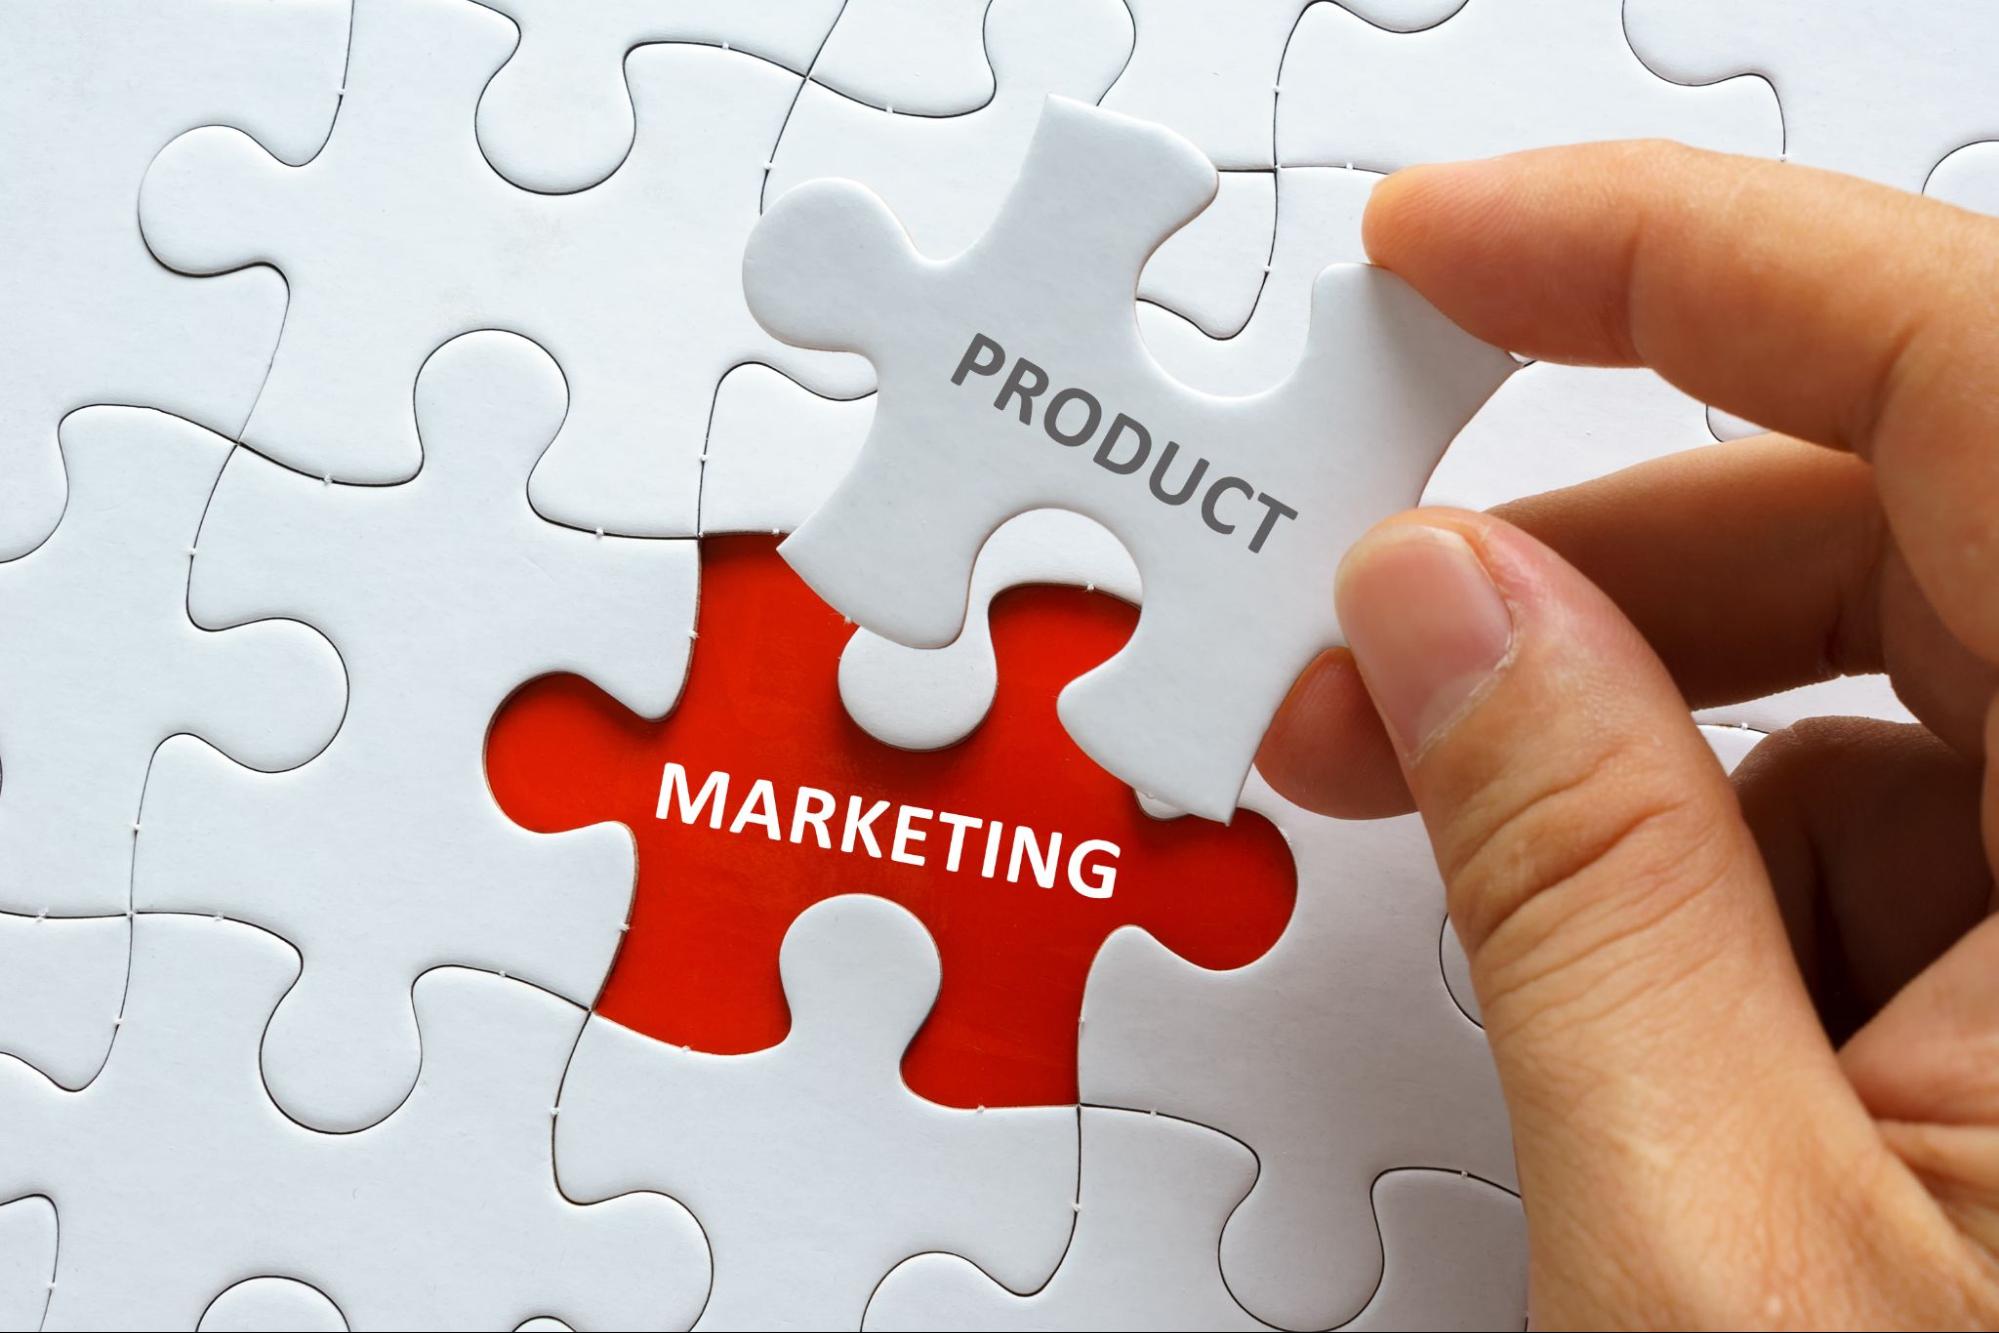 Product Marketing là gì? Công việc, vai trò quan trọng của Product Marketing